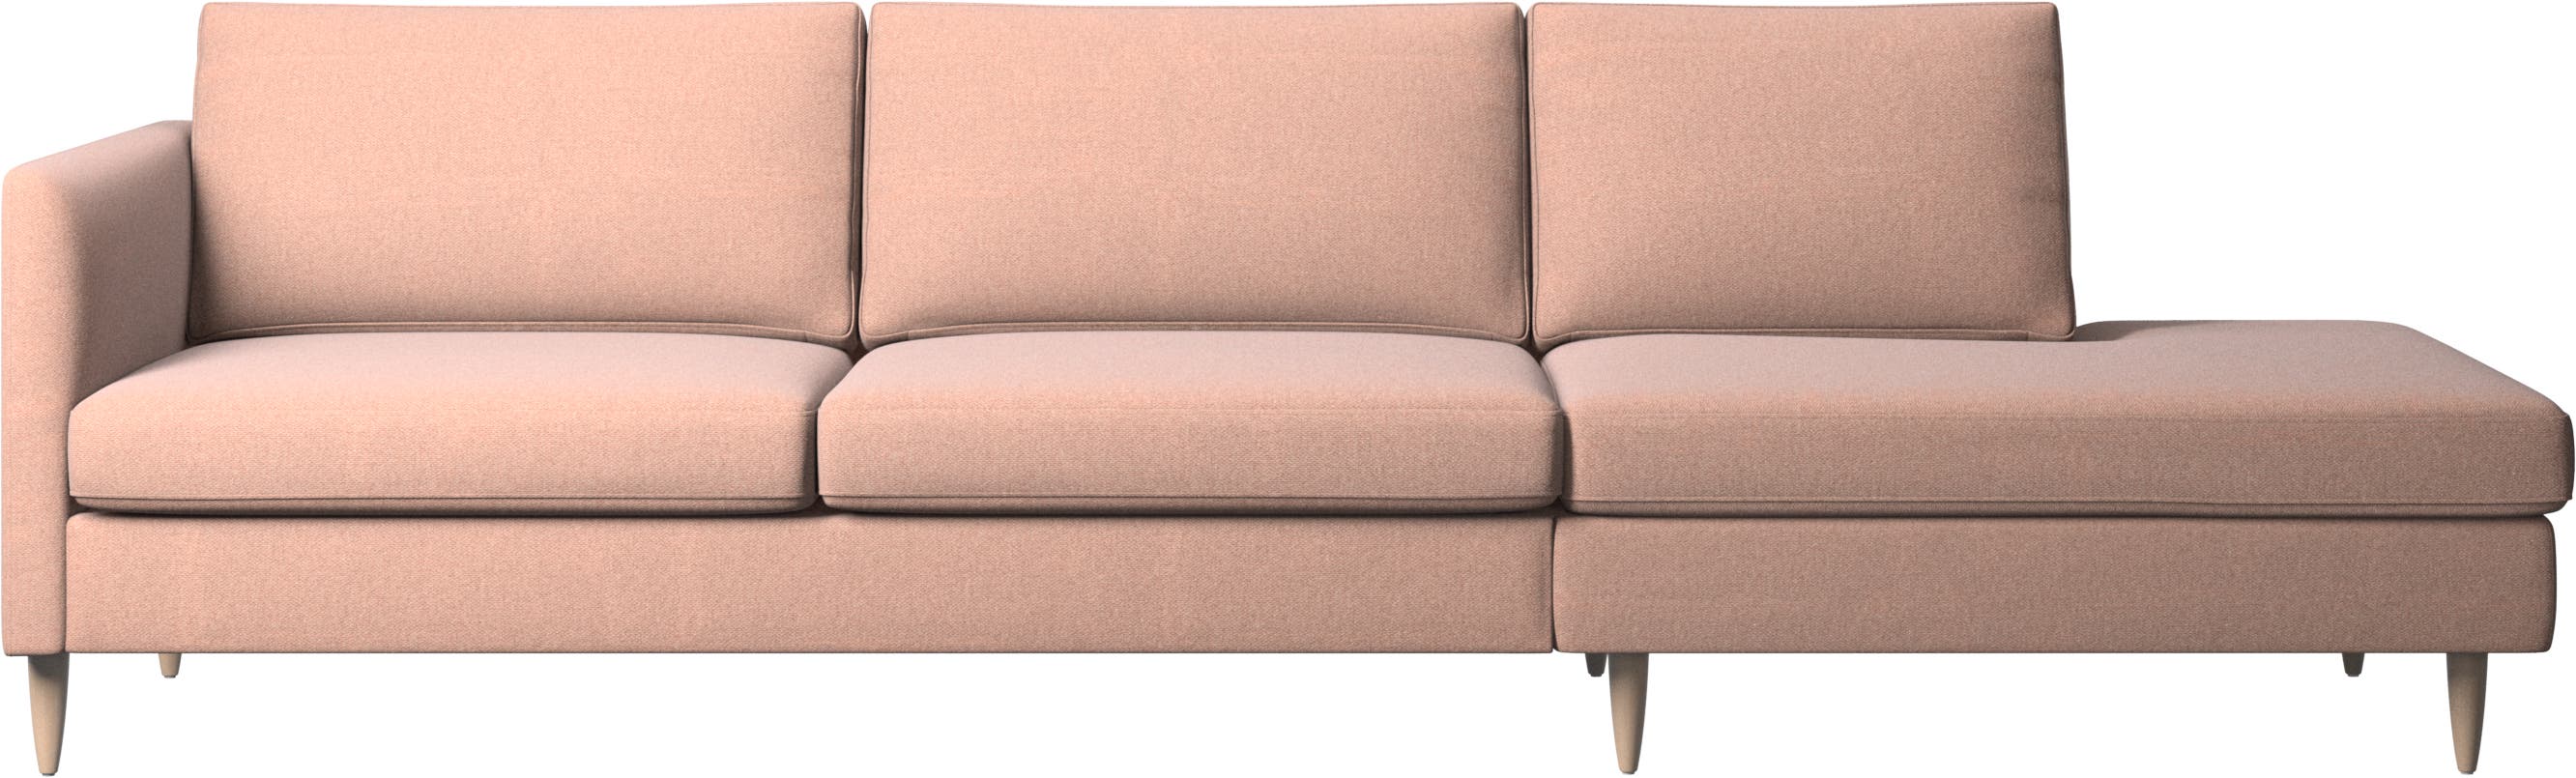 Indivi sofa med loungemodul